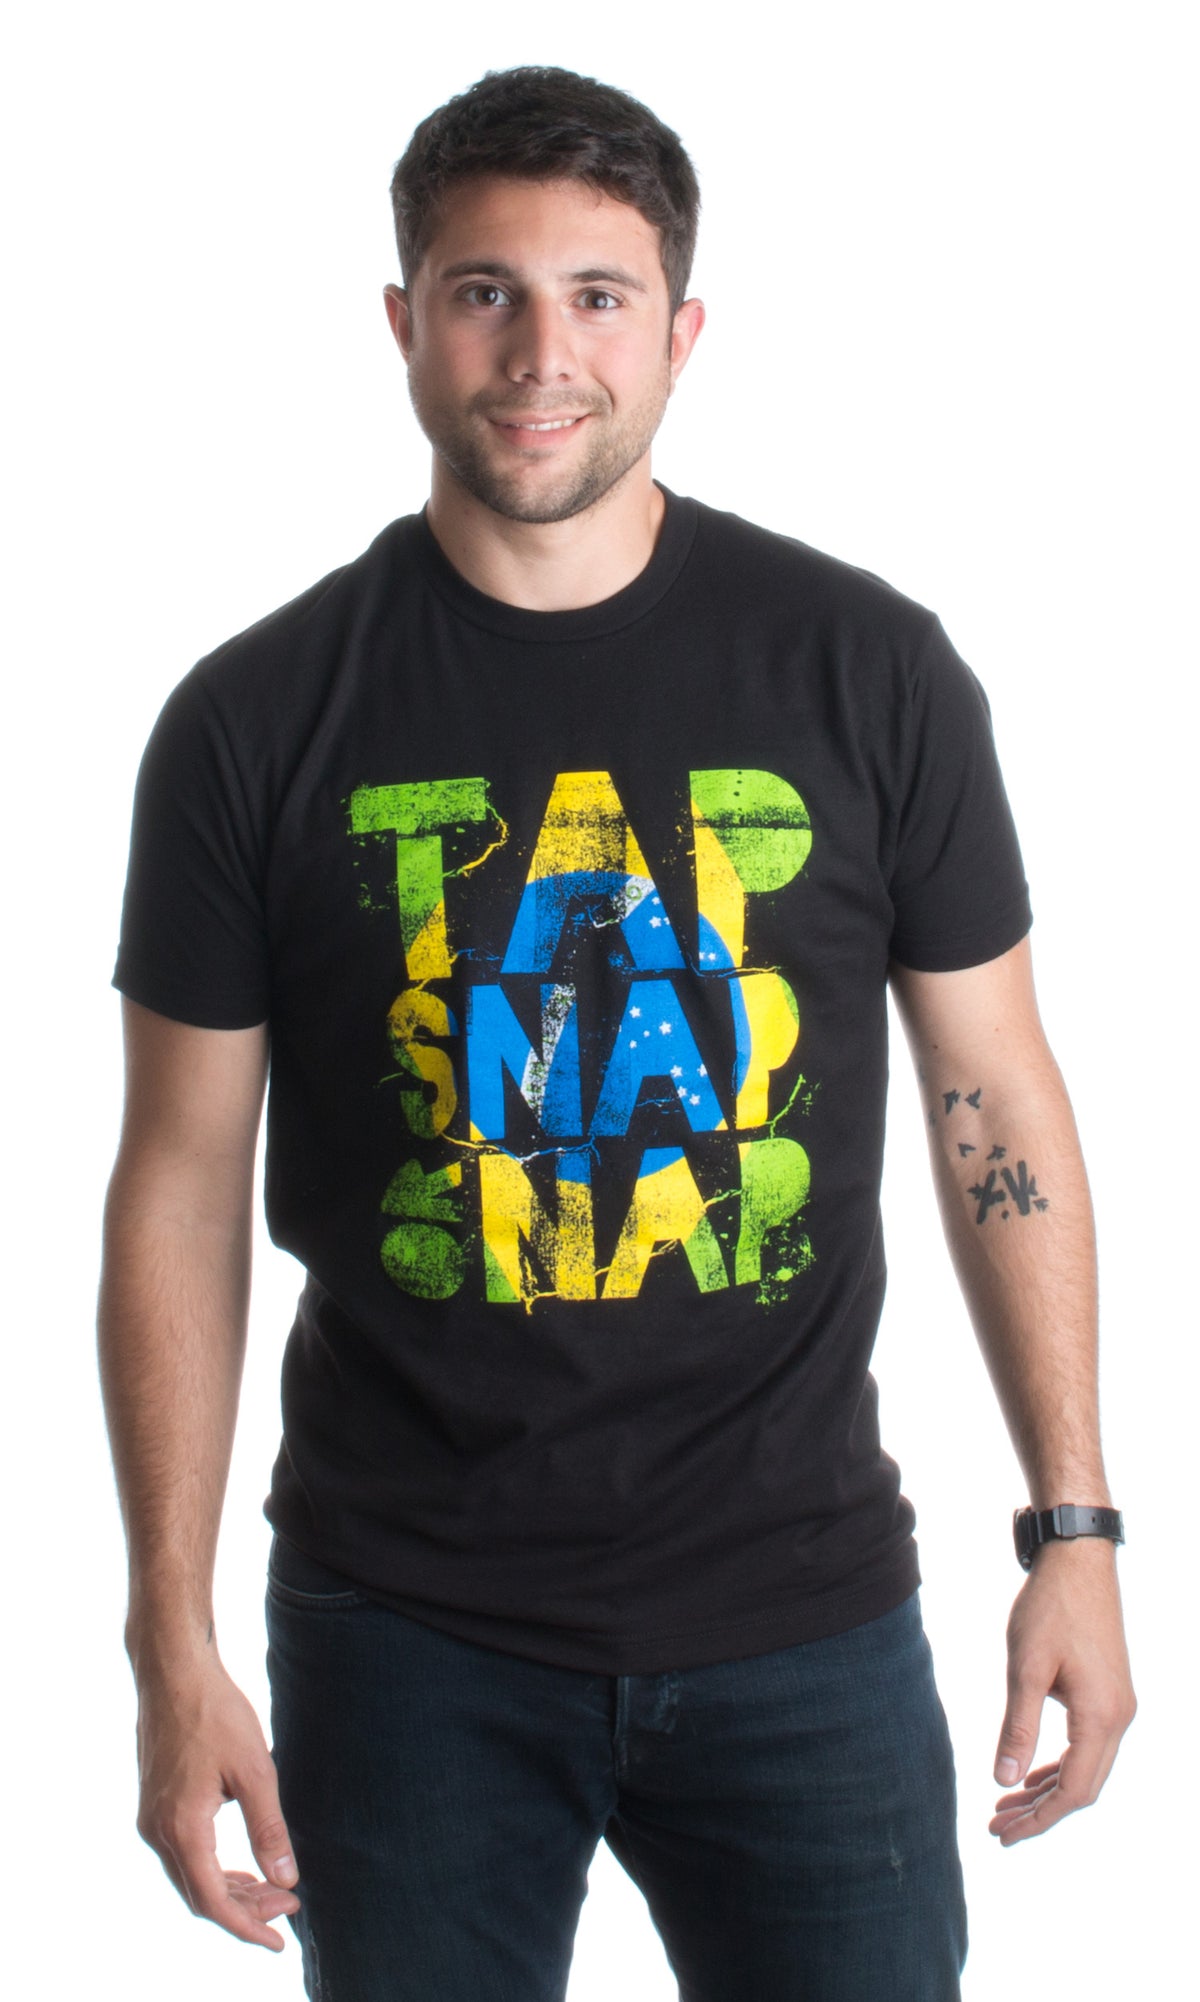 Tap, Snap, or Nap | Brazilian Jiu-Jitsu, BJJ Jiu Jitsu Brazil Unisex T-shirt